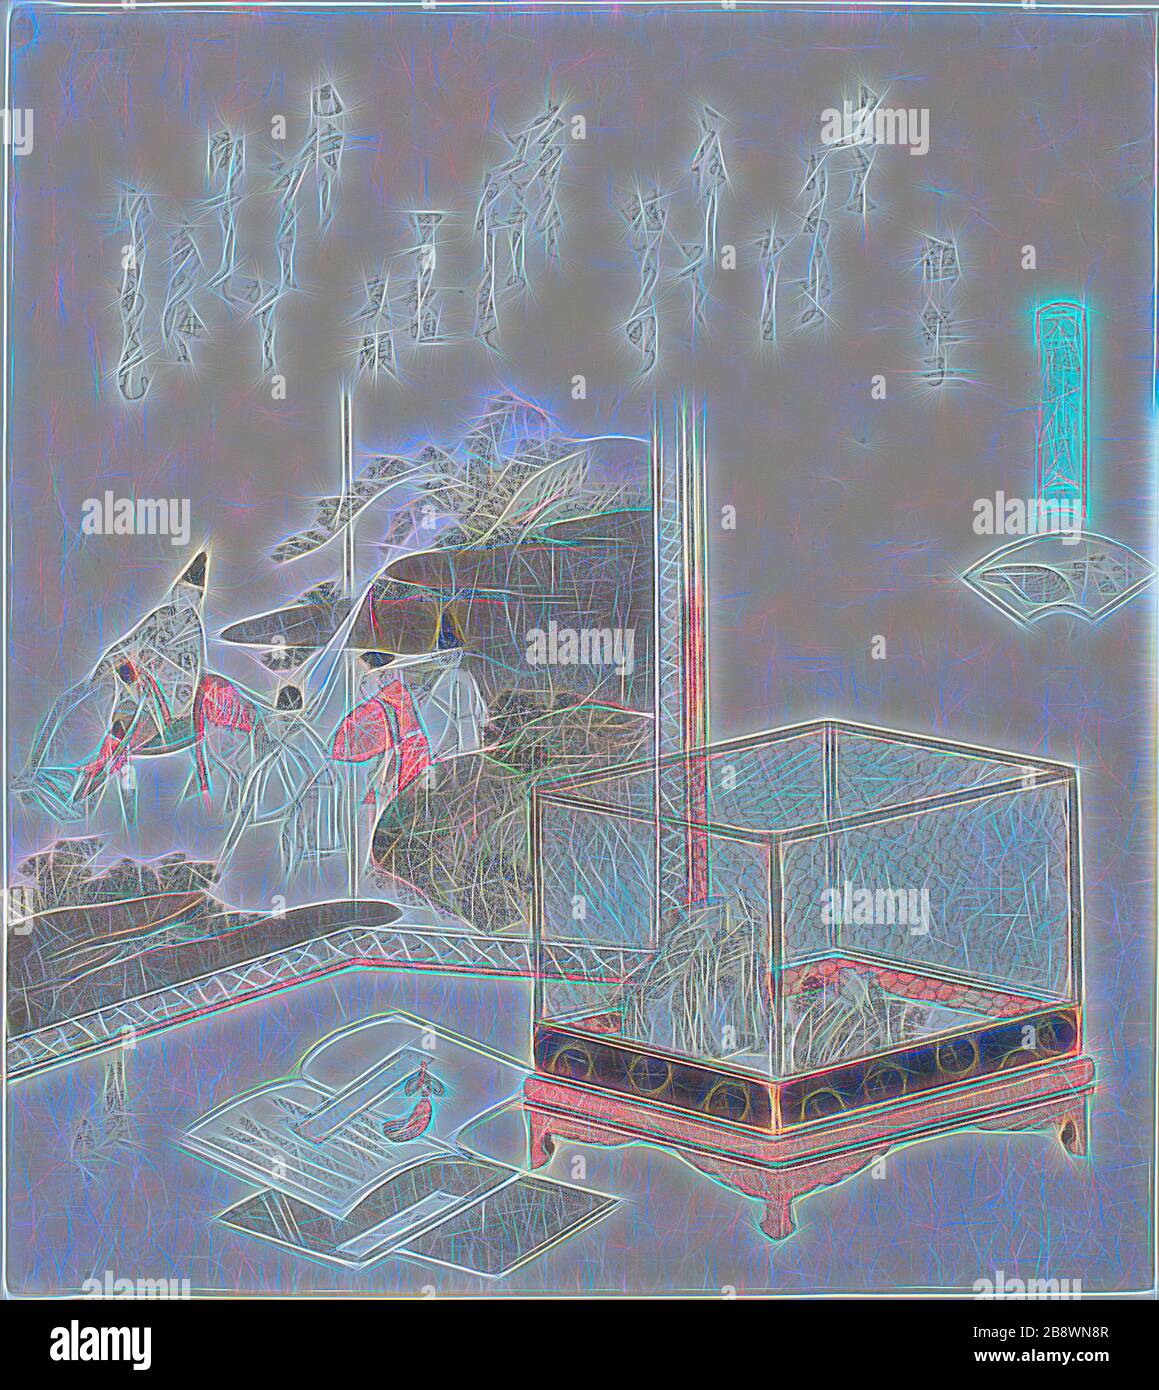 Frogs in a Cage before a Painted Screen, Illustration for the Dry-Shallows Shell (Minasegai), from the Series A Matching Game with Genroku-period poem shells (Genroku kasen kai Awase), 181, Katsushika Hokusai ?? ??, Japanisch, 170-1849, Japan, Farbholzholzmuster mit Metallpigmenten, Surimono shikishiban, 19,9 x 17,9 cm, von Gibon neu vorgestellt, Design von warmfröhlichem Leuchten von Helligkeit und Lichtstrahlen. Klassische Kunst mit moderner Note neu erfunden. Fotografie, inspiriert vom Futurismus, die dynamische Energie moderner Technologie, Bewegung, Geschwindigkeit und Kultur revolutionieren. Stockfoto